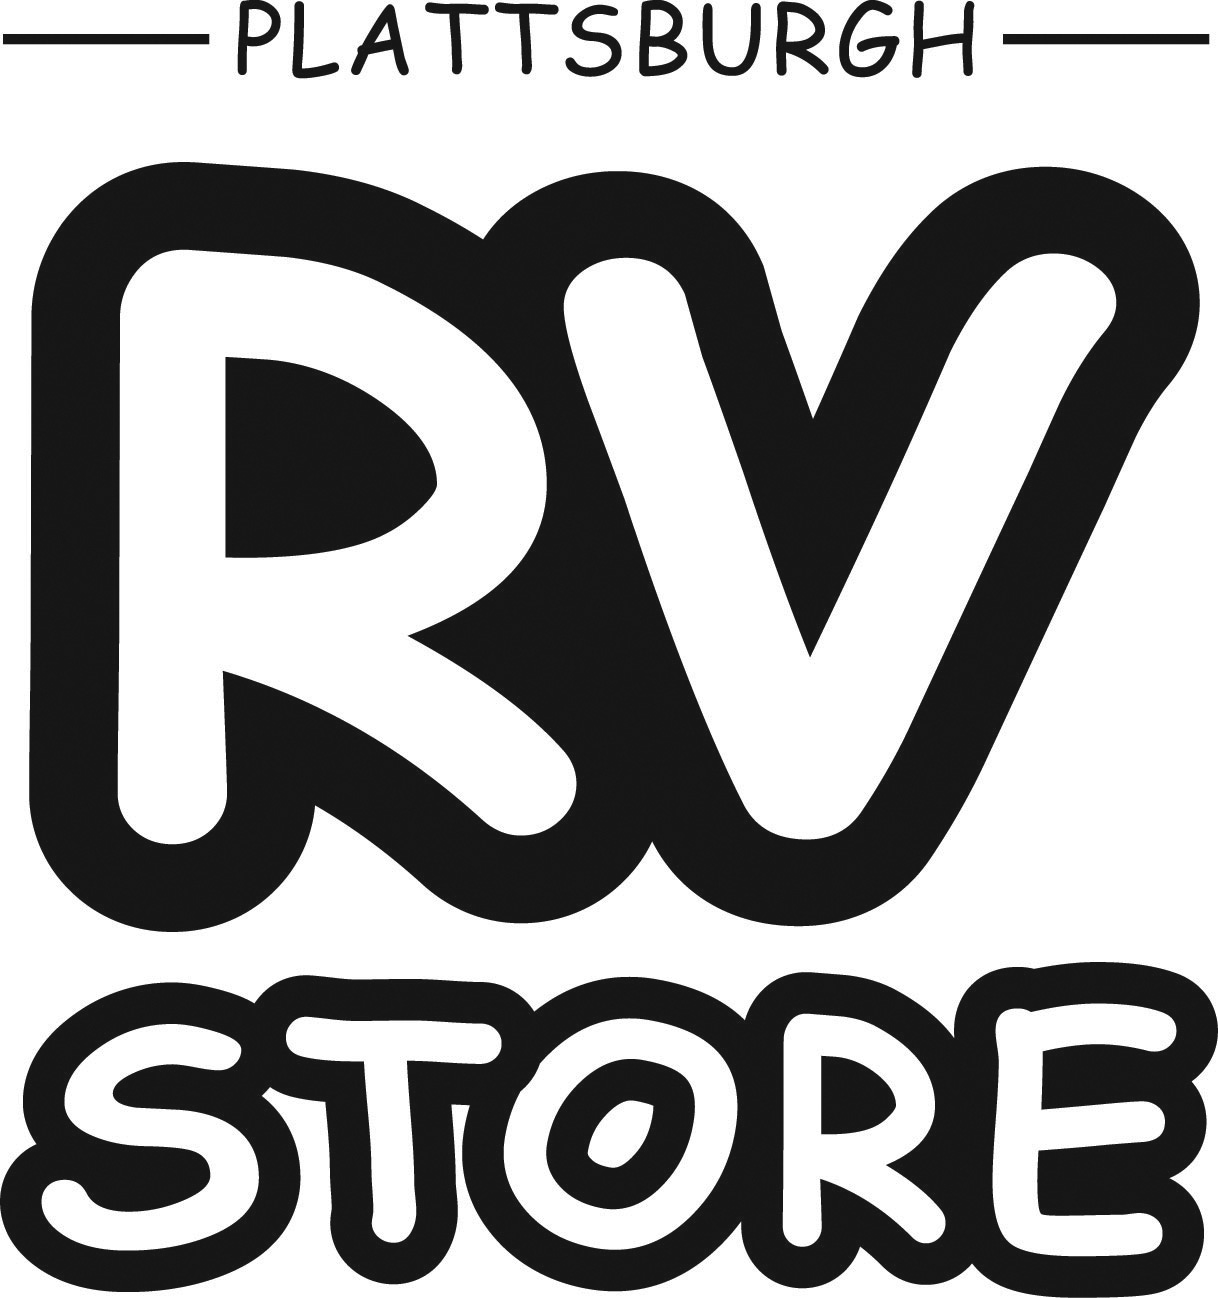 Plattsburgh RV Store